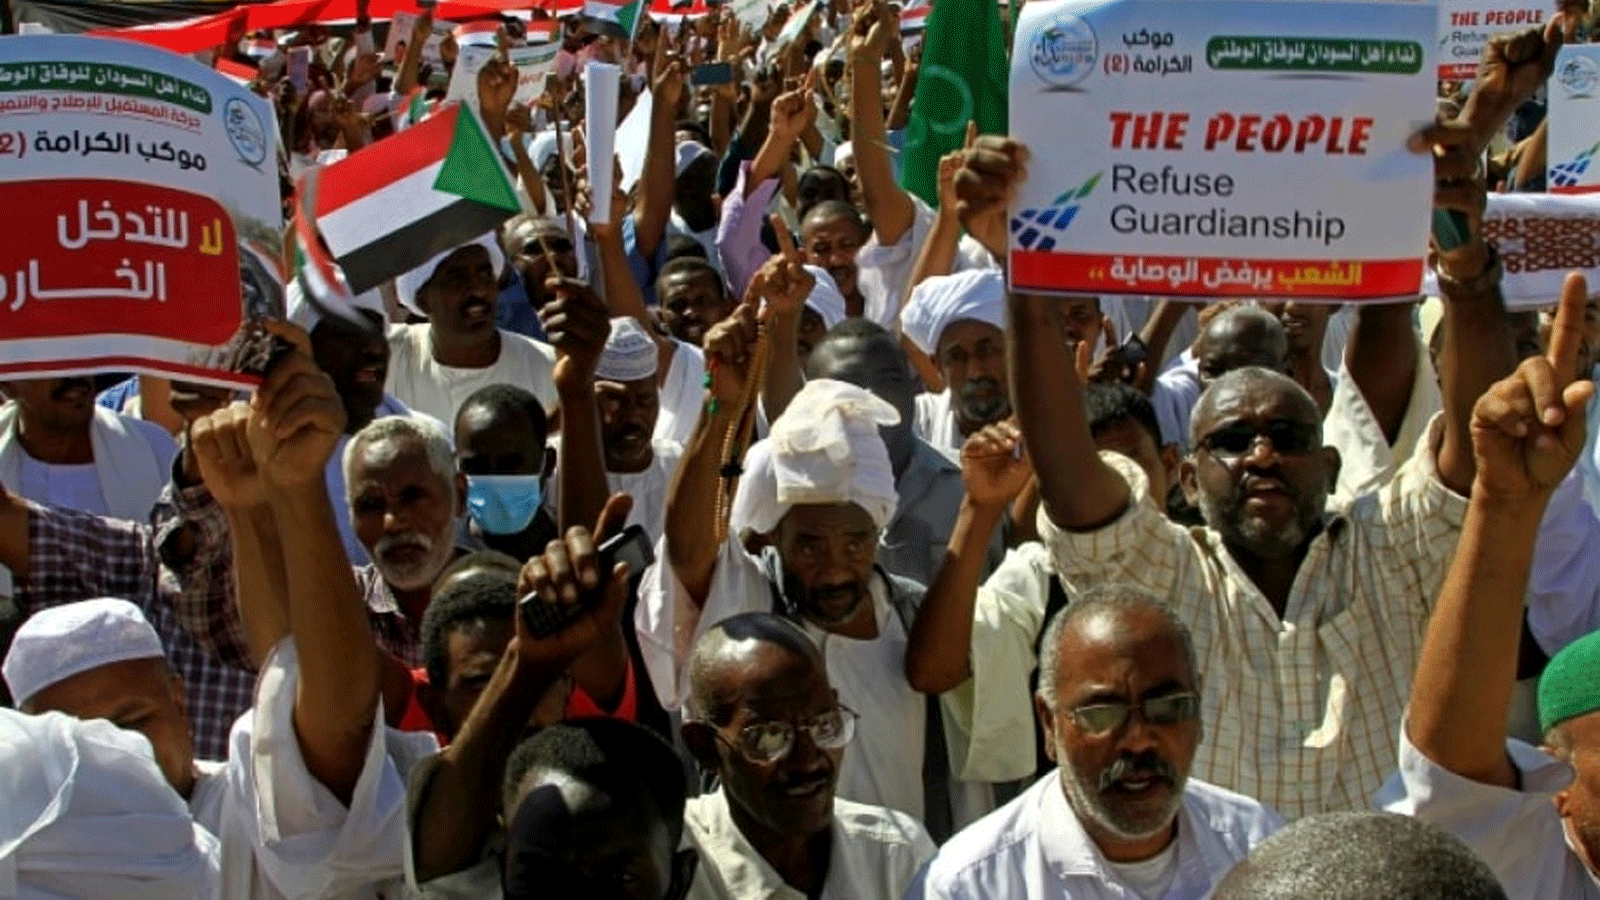 حتجاج سوداني على وساطة الأمم المتحدة بين قيادات مدنية وجيش سوداني خارج مقر الأمم المتحدة بمنطقة المنشية بالعاصمة الخرطوم.